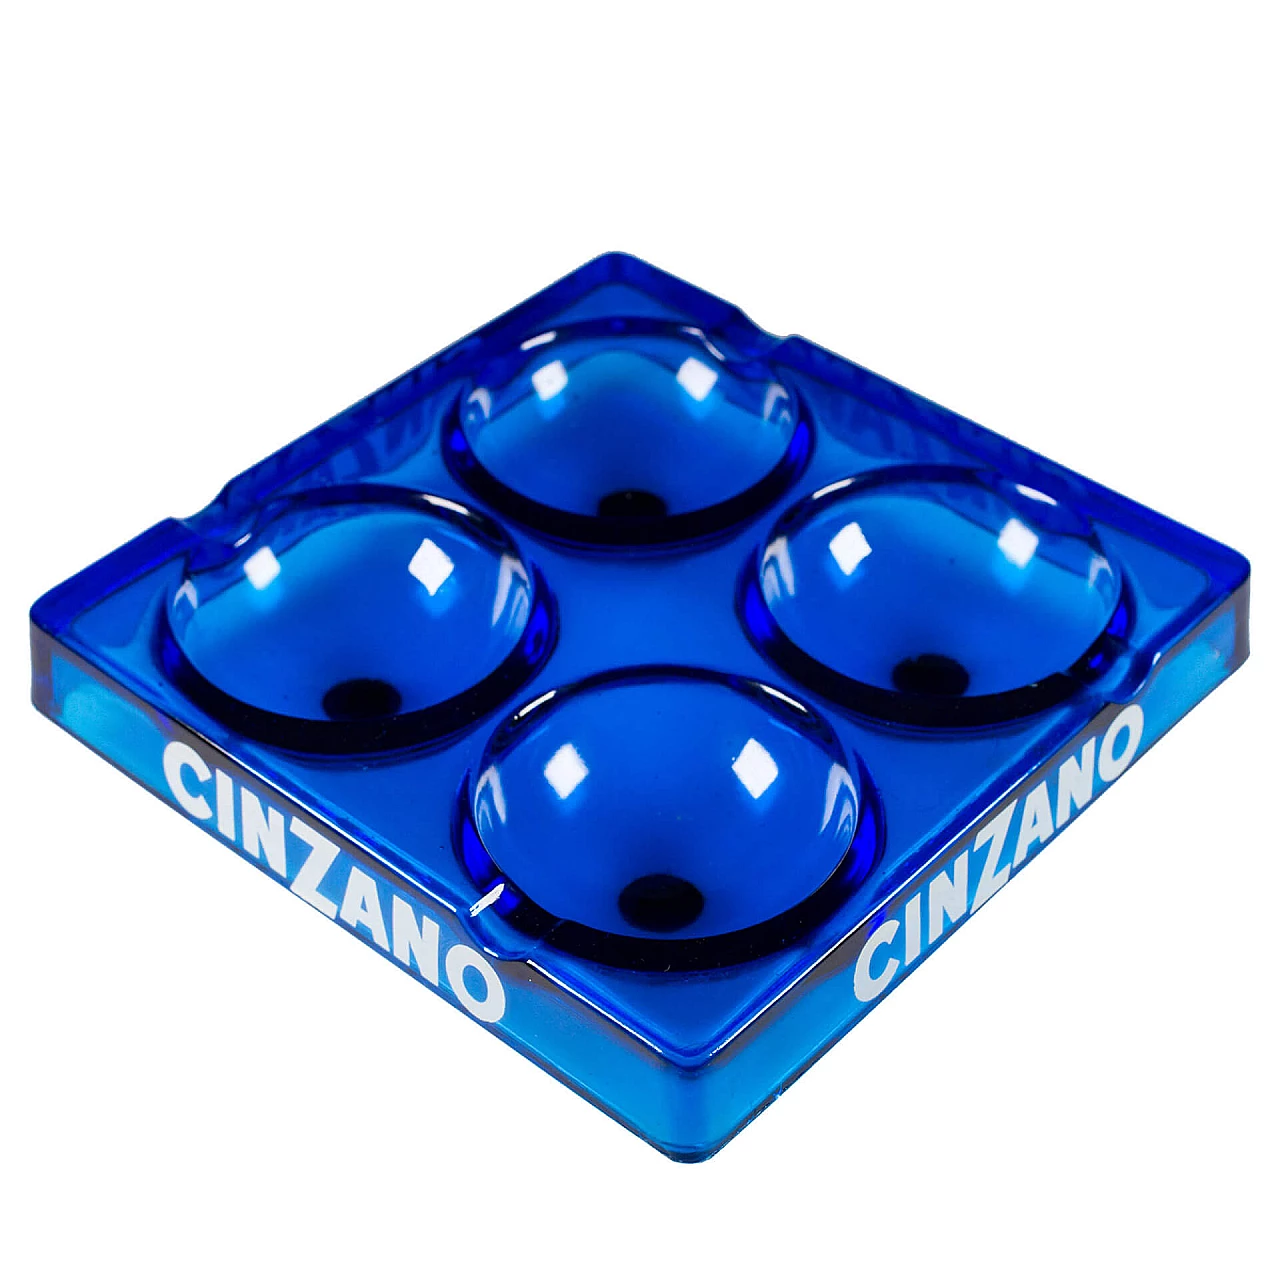 Cinzano ashtray in blue glass, 1960s 1113399